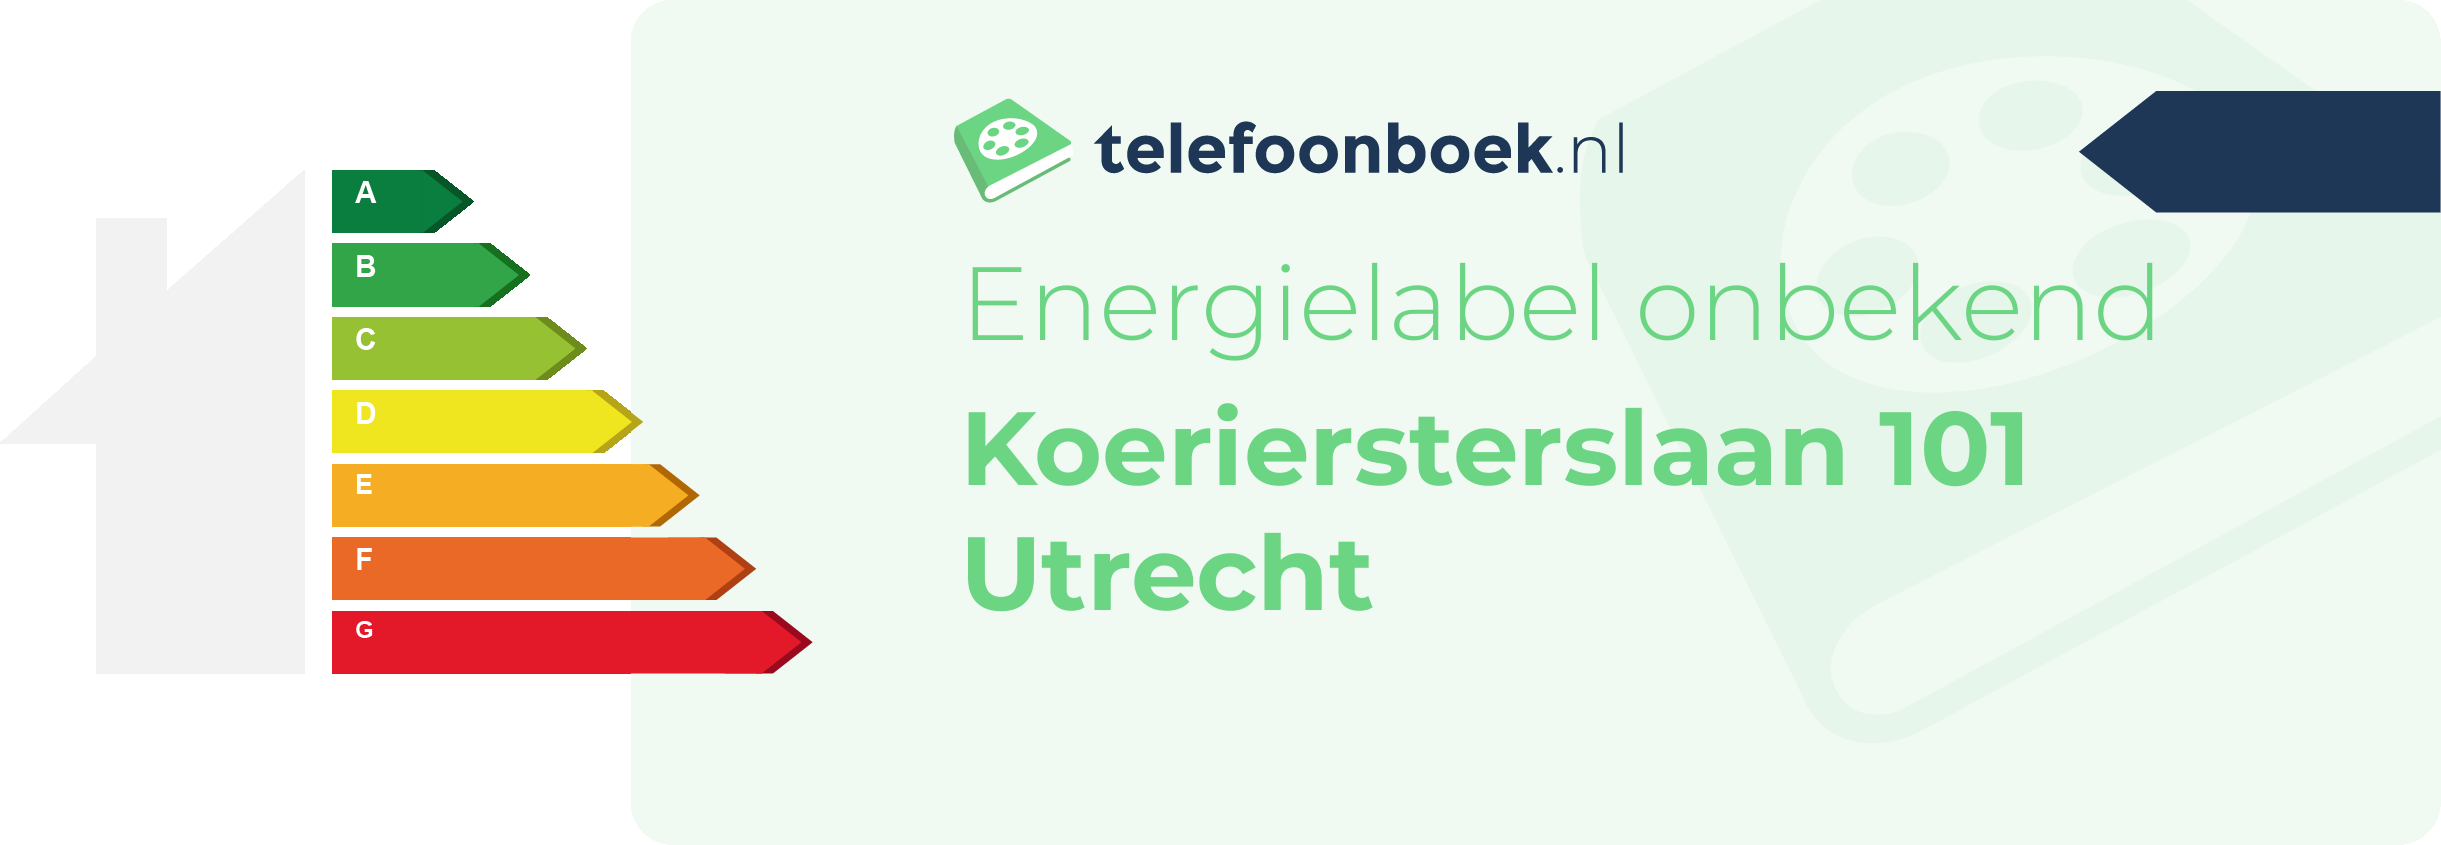 Energielabel Koeriersterslaan 101 Utrecht